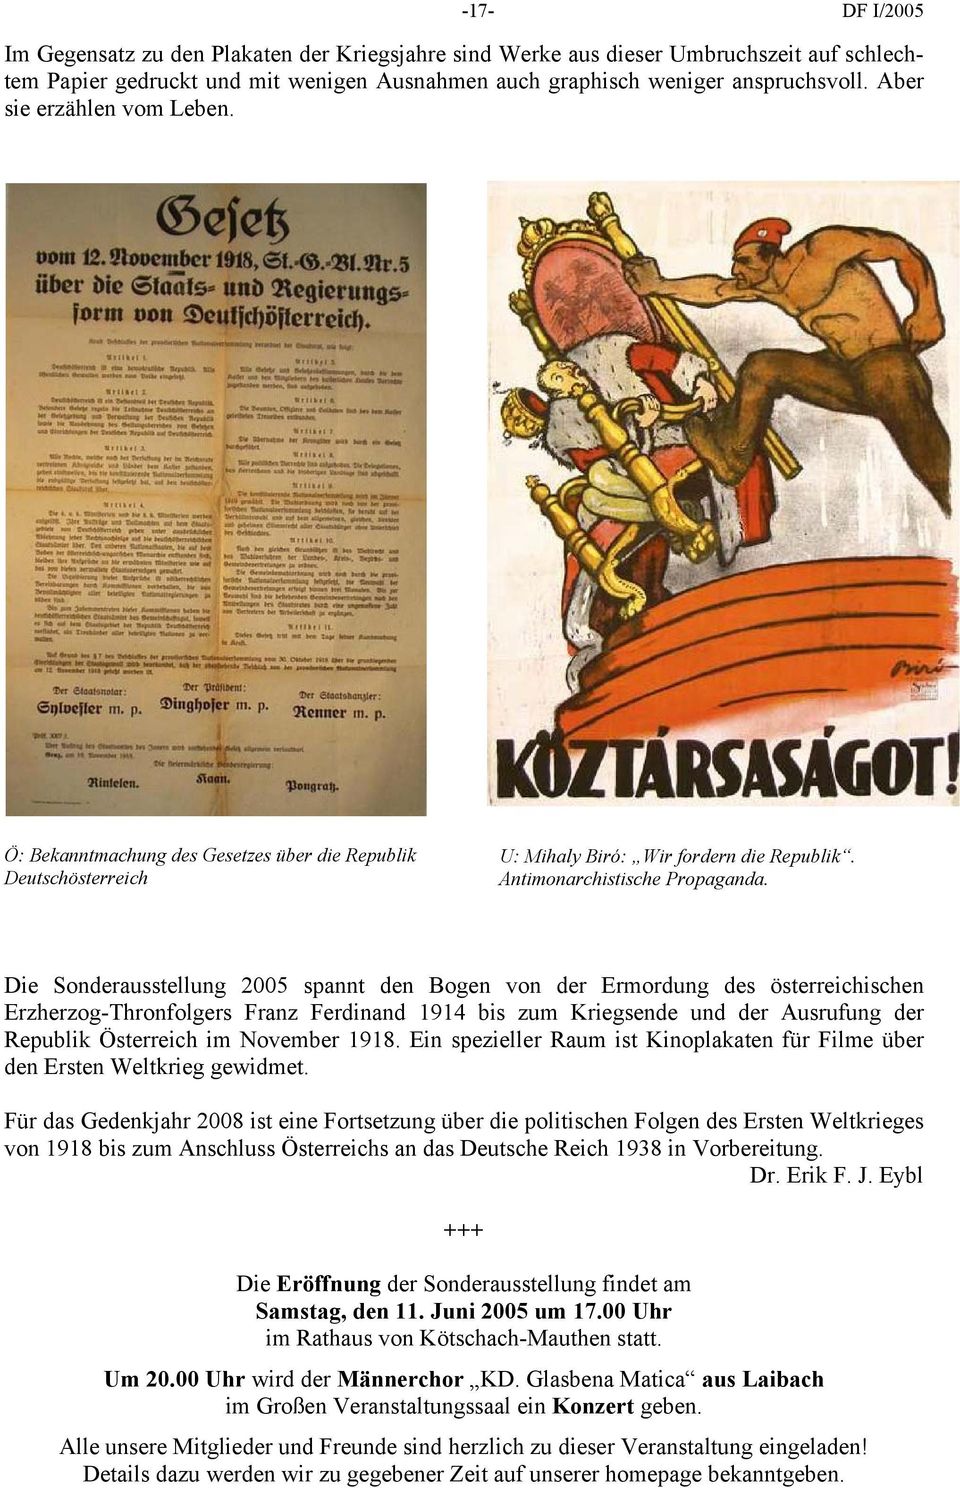 Die Sonderausstellung 2005 spannt den Bogen von der Ermordung des österreichischen Erzherzog-Thronfolgers Franz Ferdinand 1914 bis zum Kriegsende und der Ausrufung der Republik Österreich im November